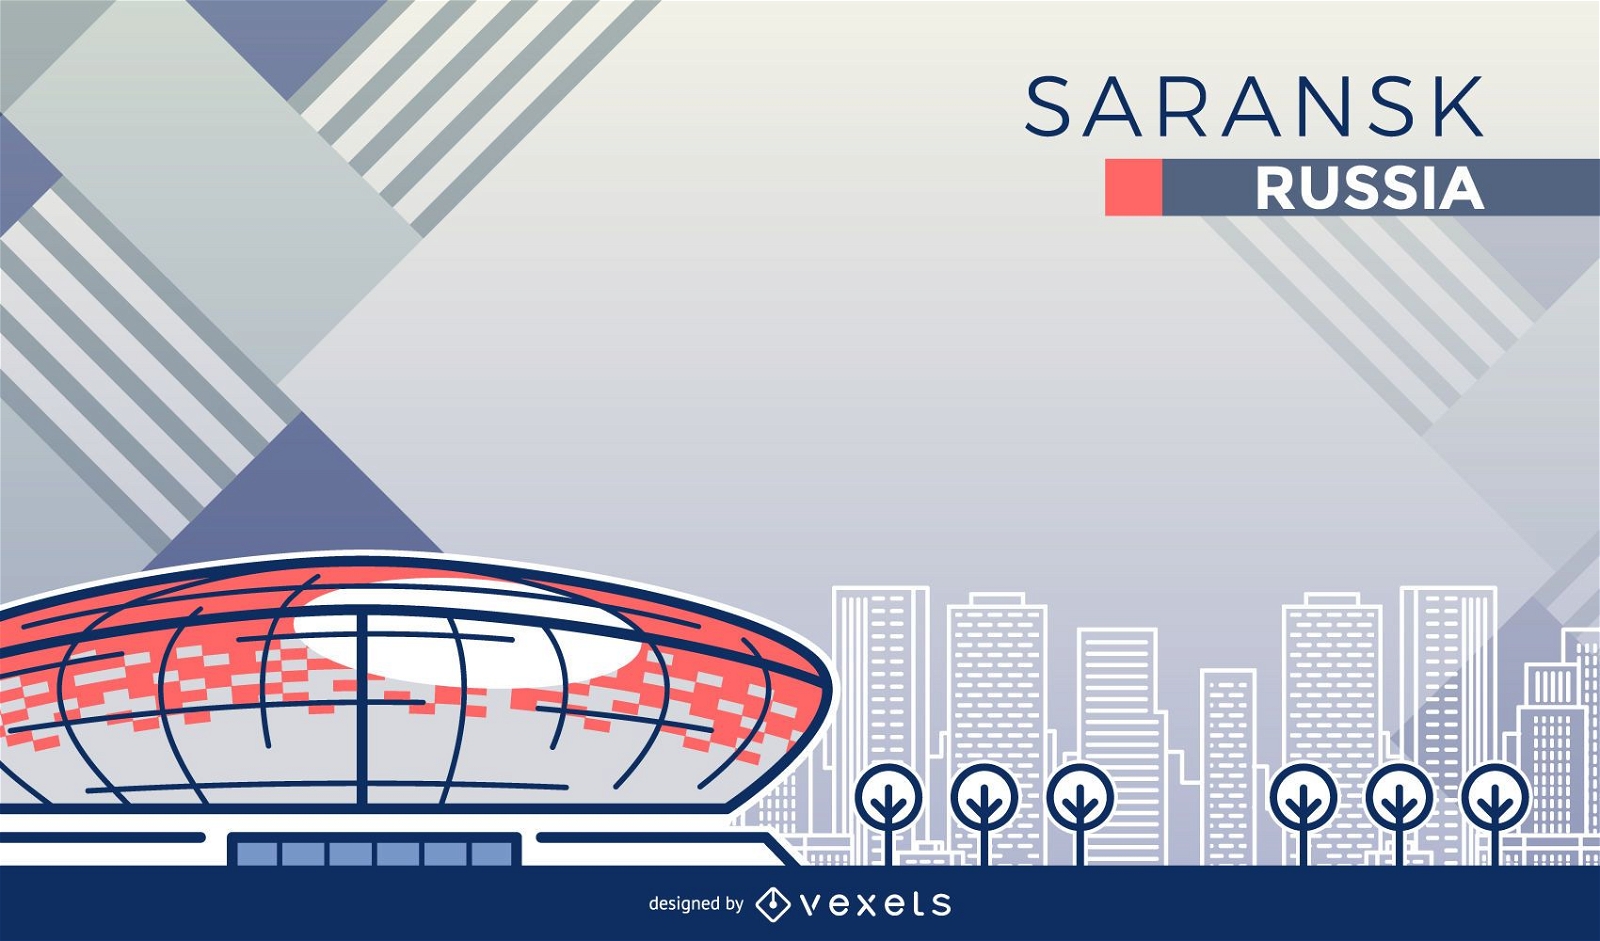 Karikatur des Saransk-Fußballstadions